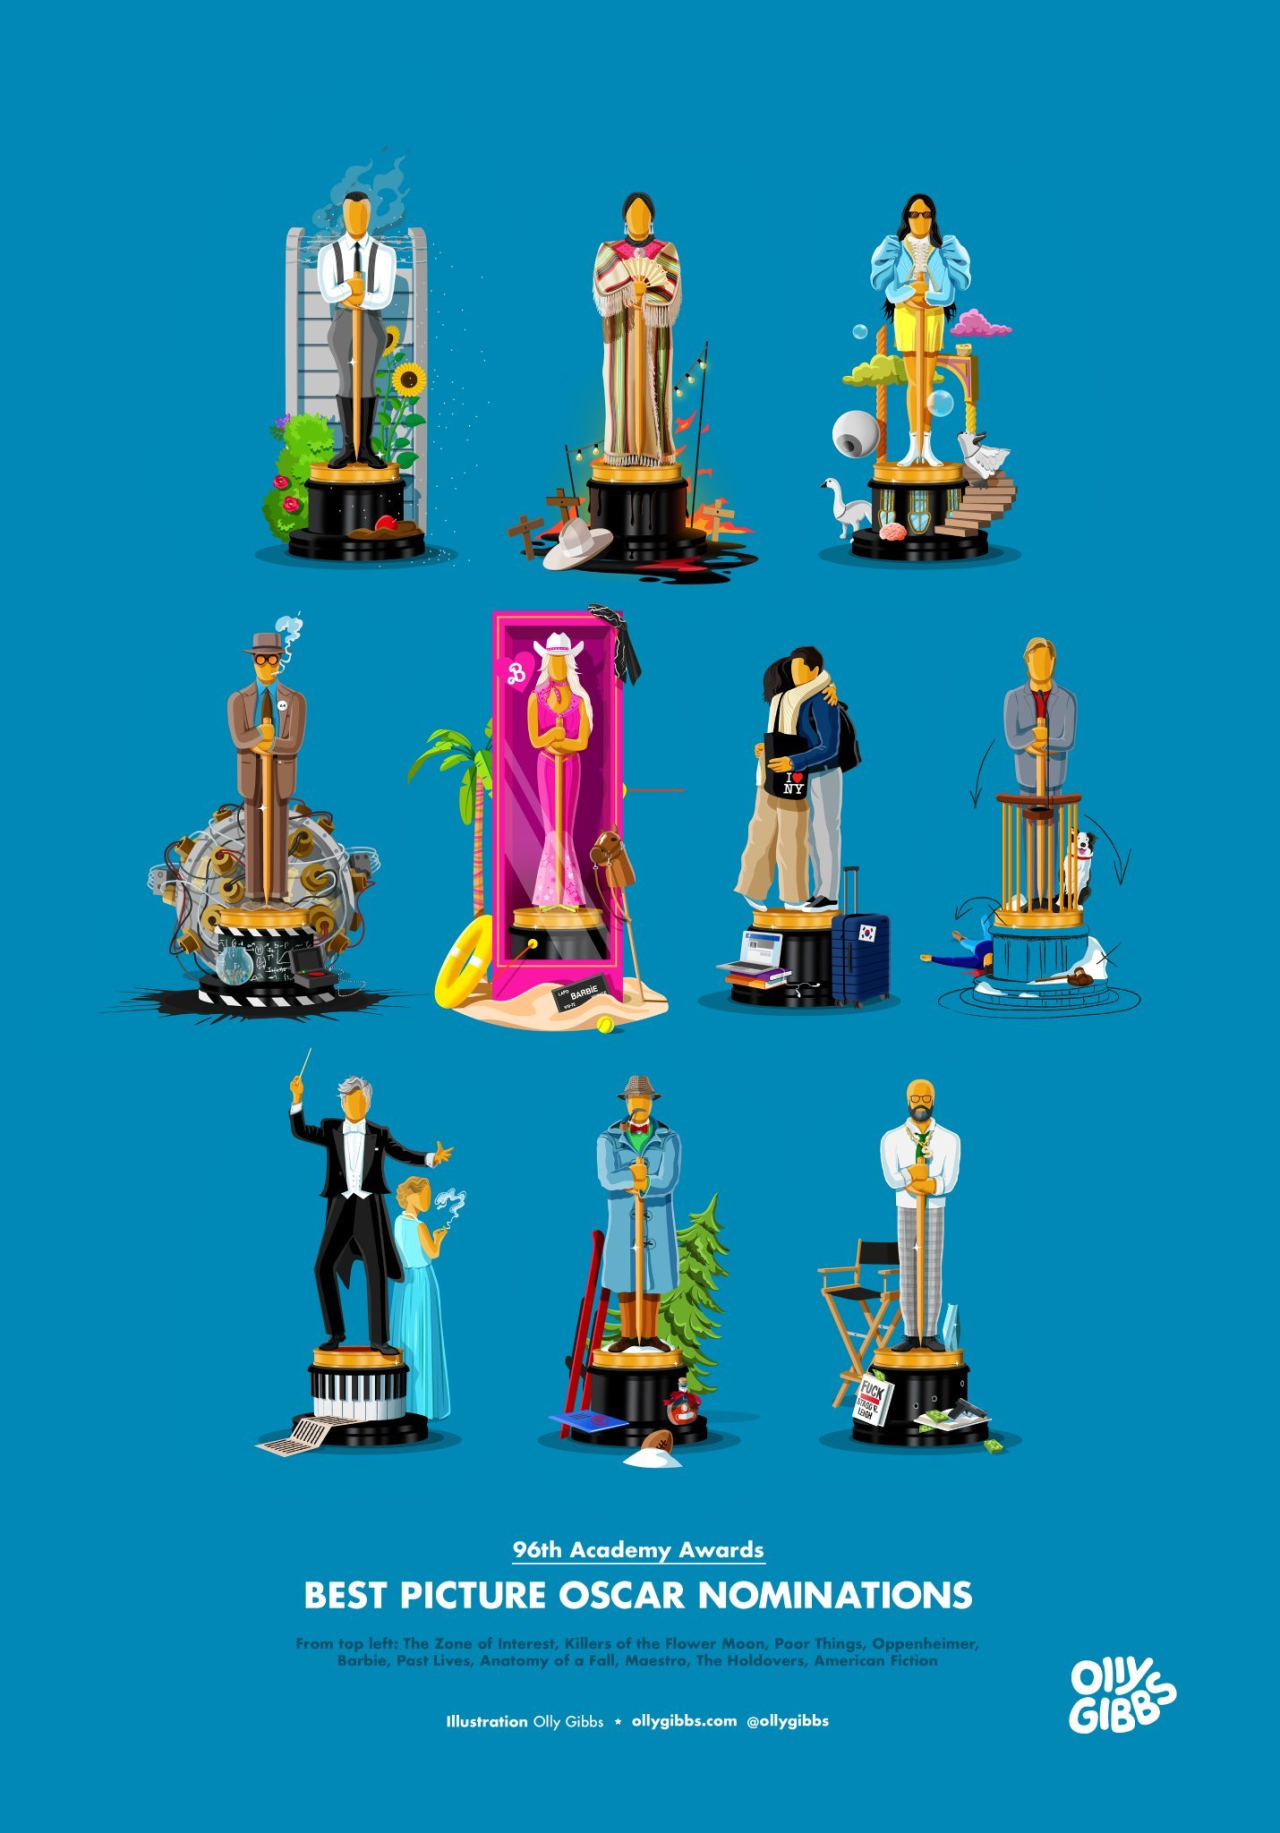 En iyi film adaylarından ilham aldı: Oscar heykelleri yeniden tasarlandı - Sayfa 3